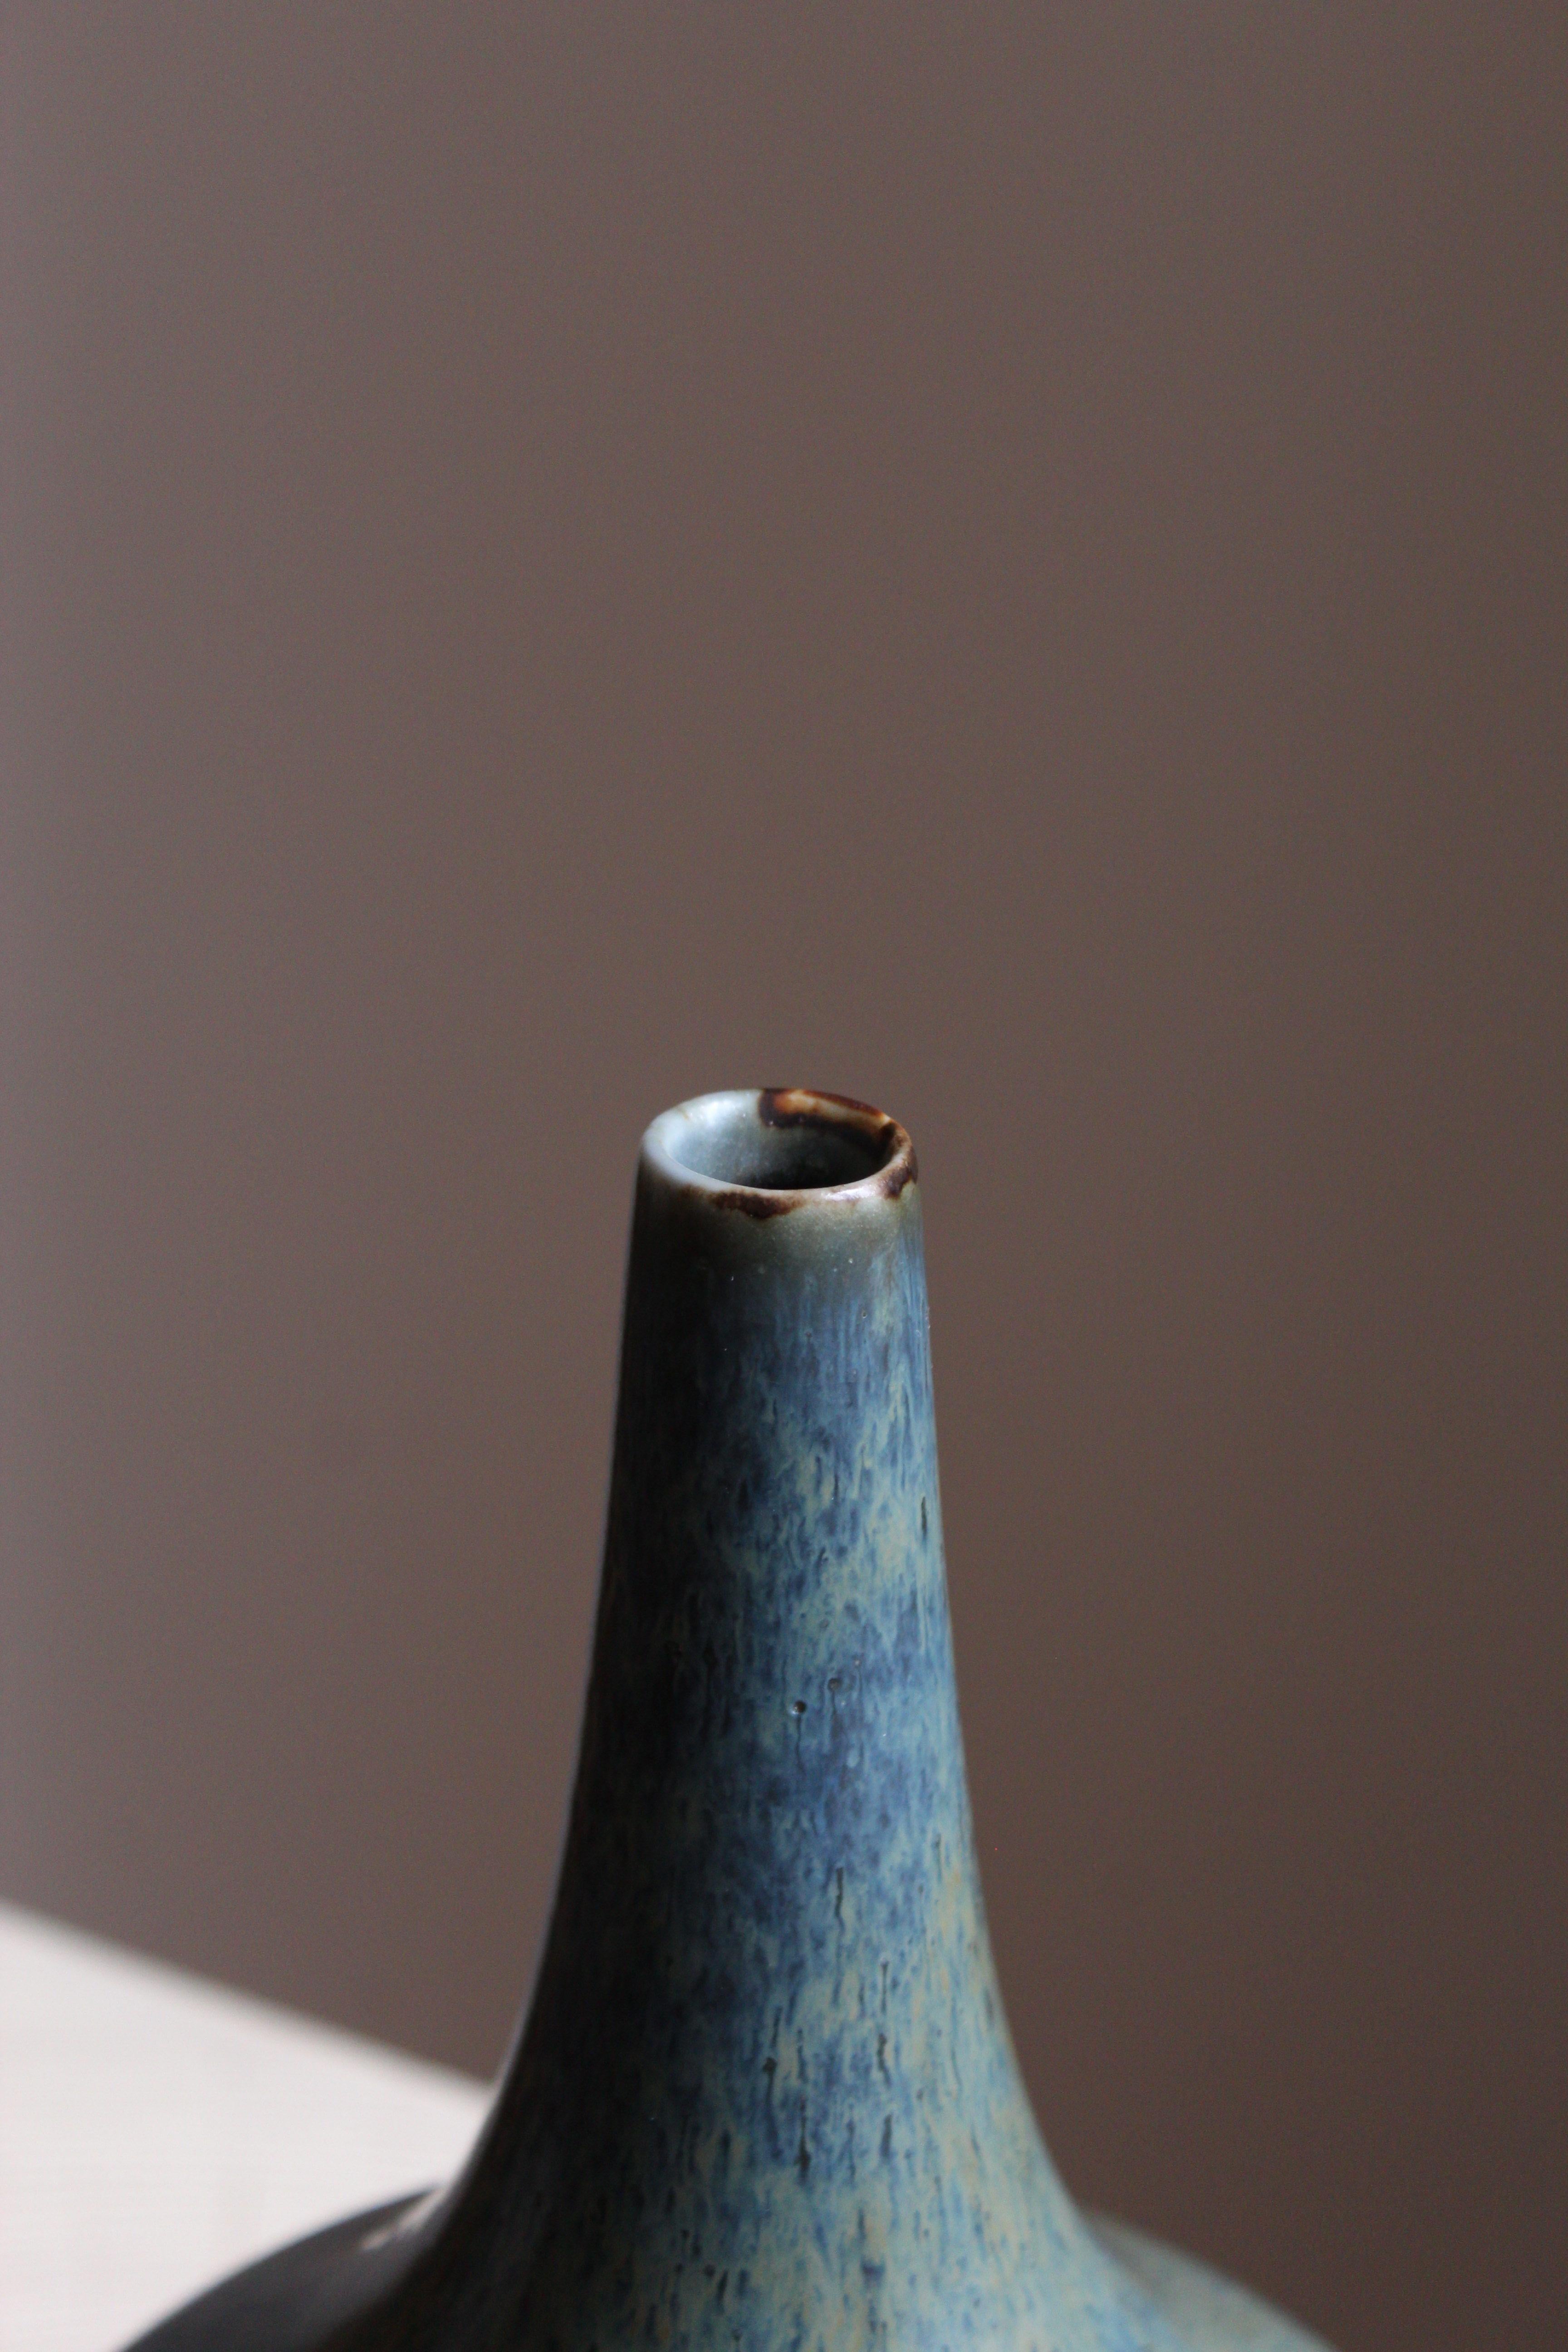 European Gunnar Nylund, Vase or vessel, Blue-glazed Stoneware, Rörstand, Sweden, 1950s